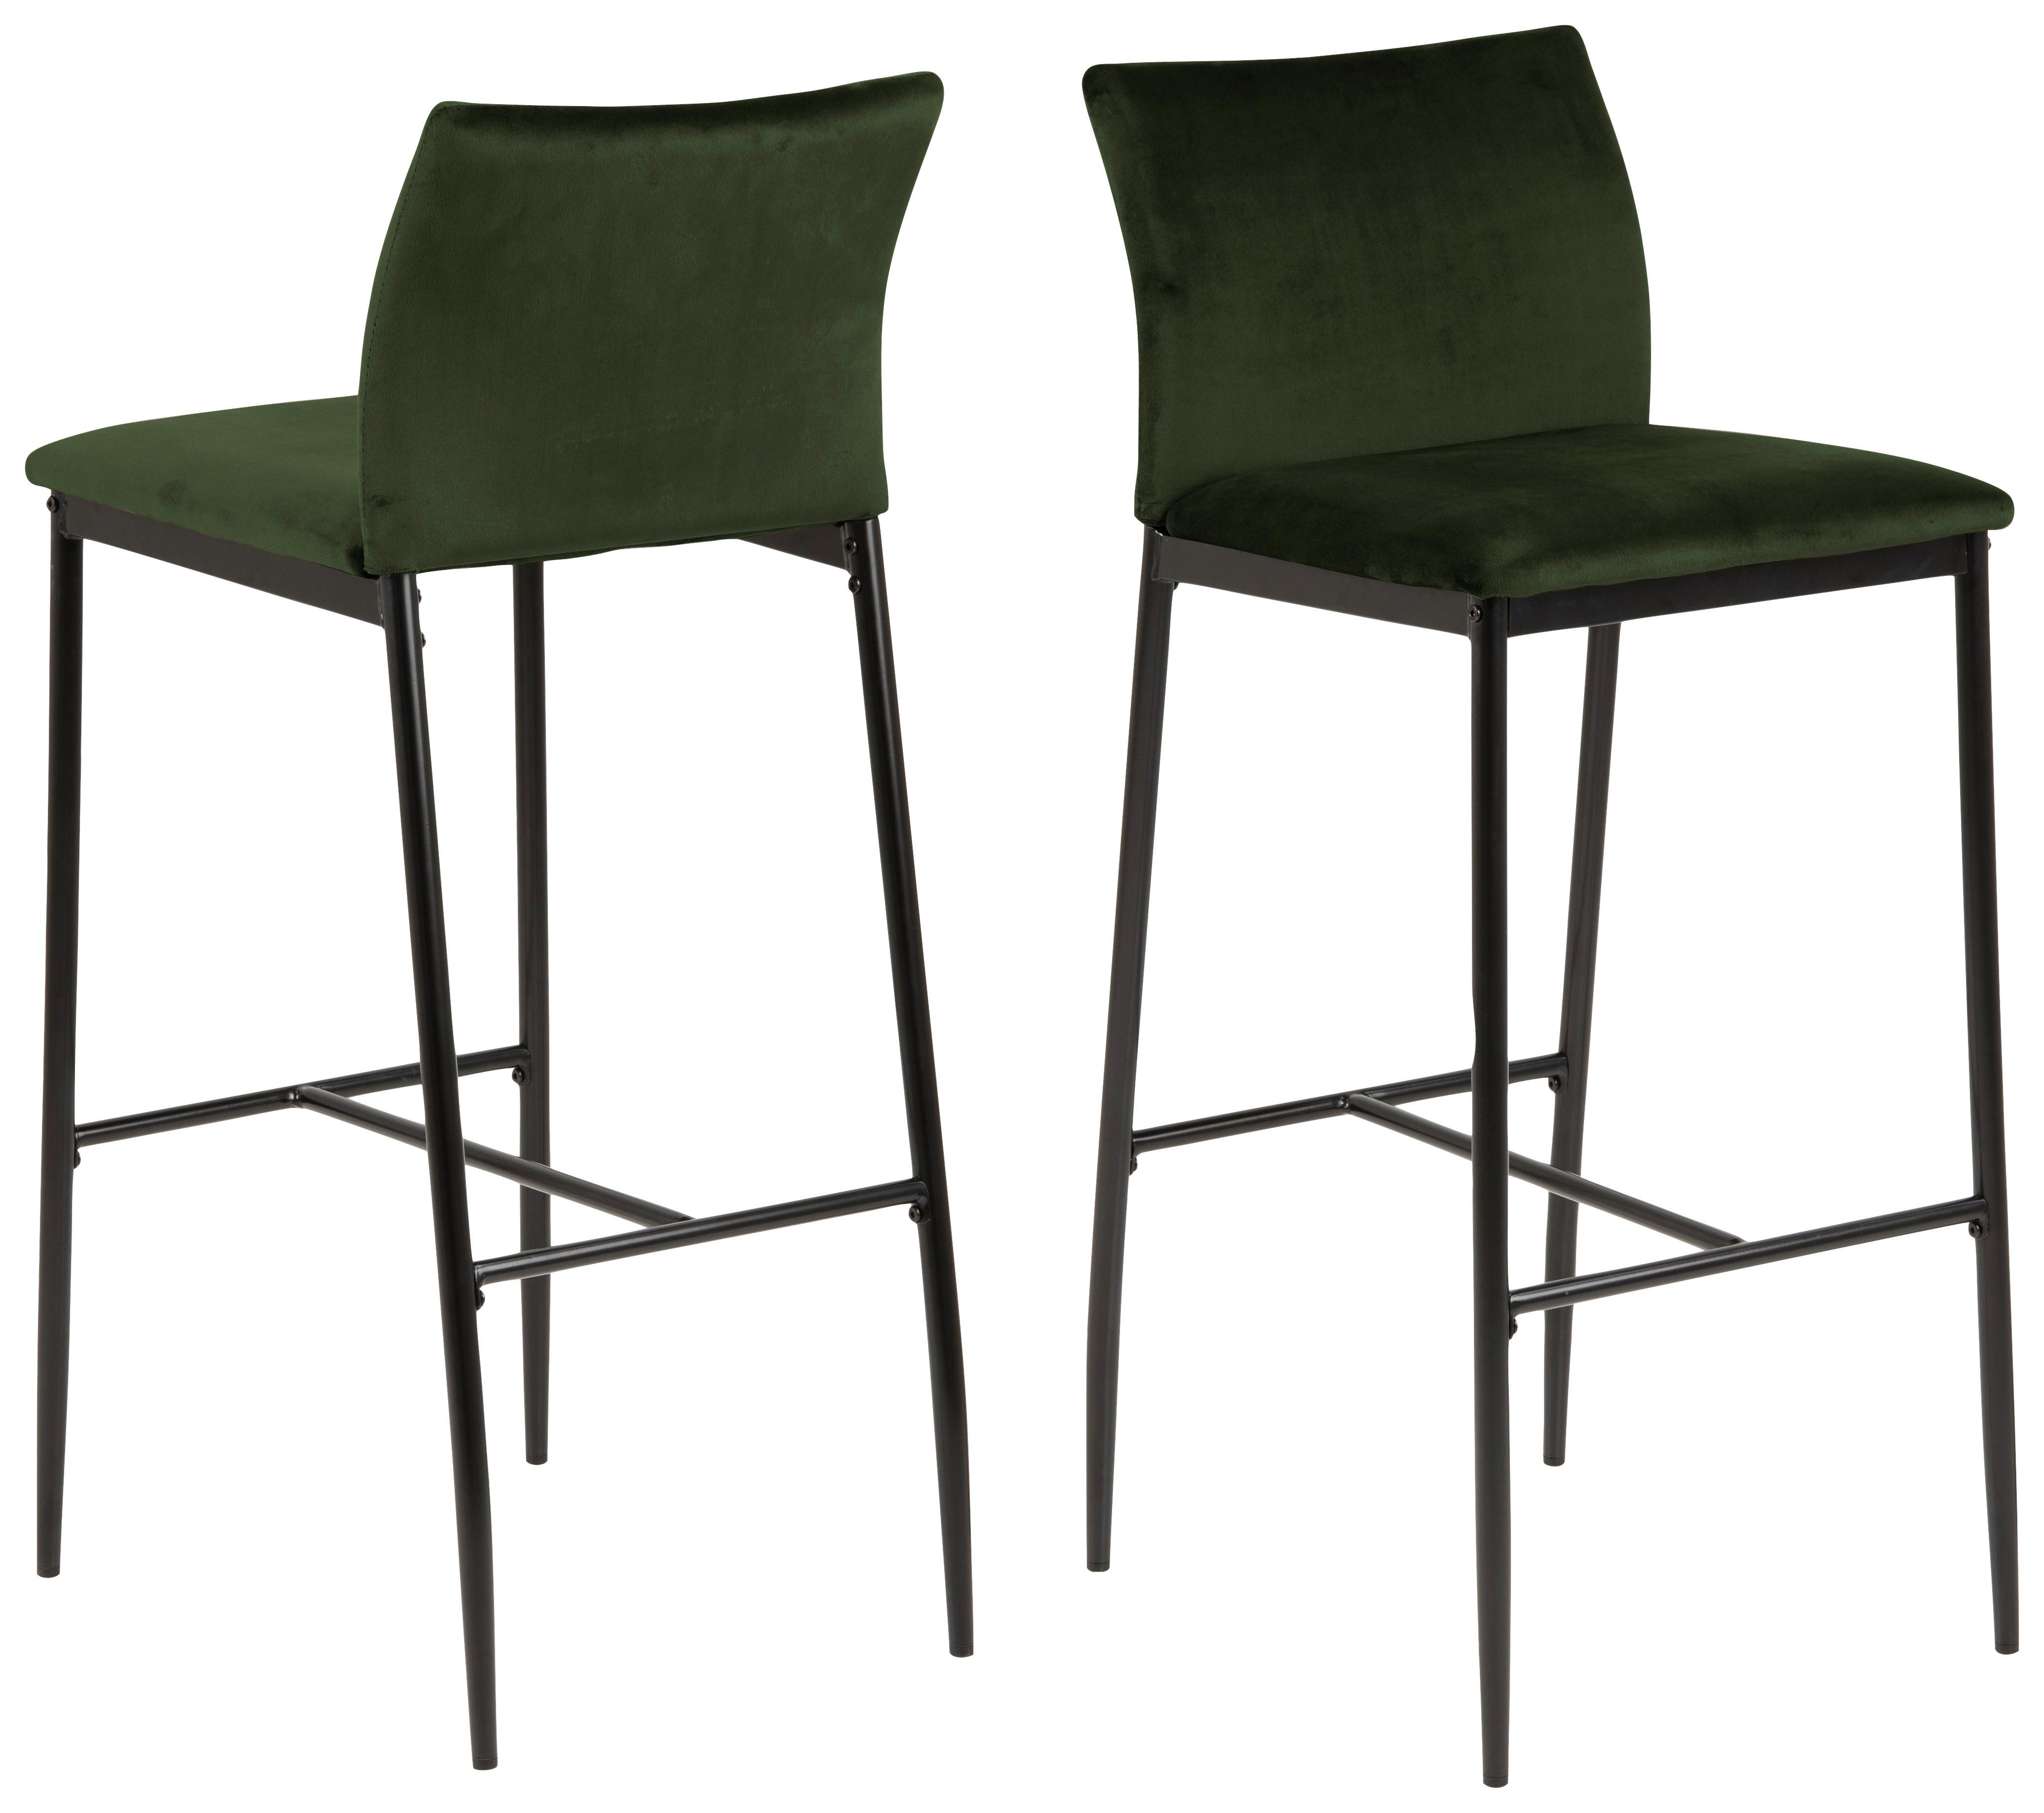 Barová Židle Demina - černá/olivově zelená, kov/textil (40,5/102/46cm)